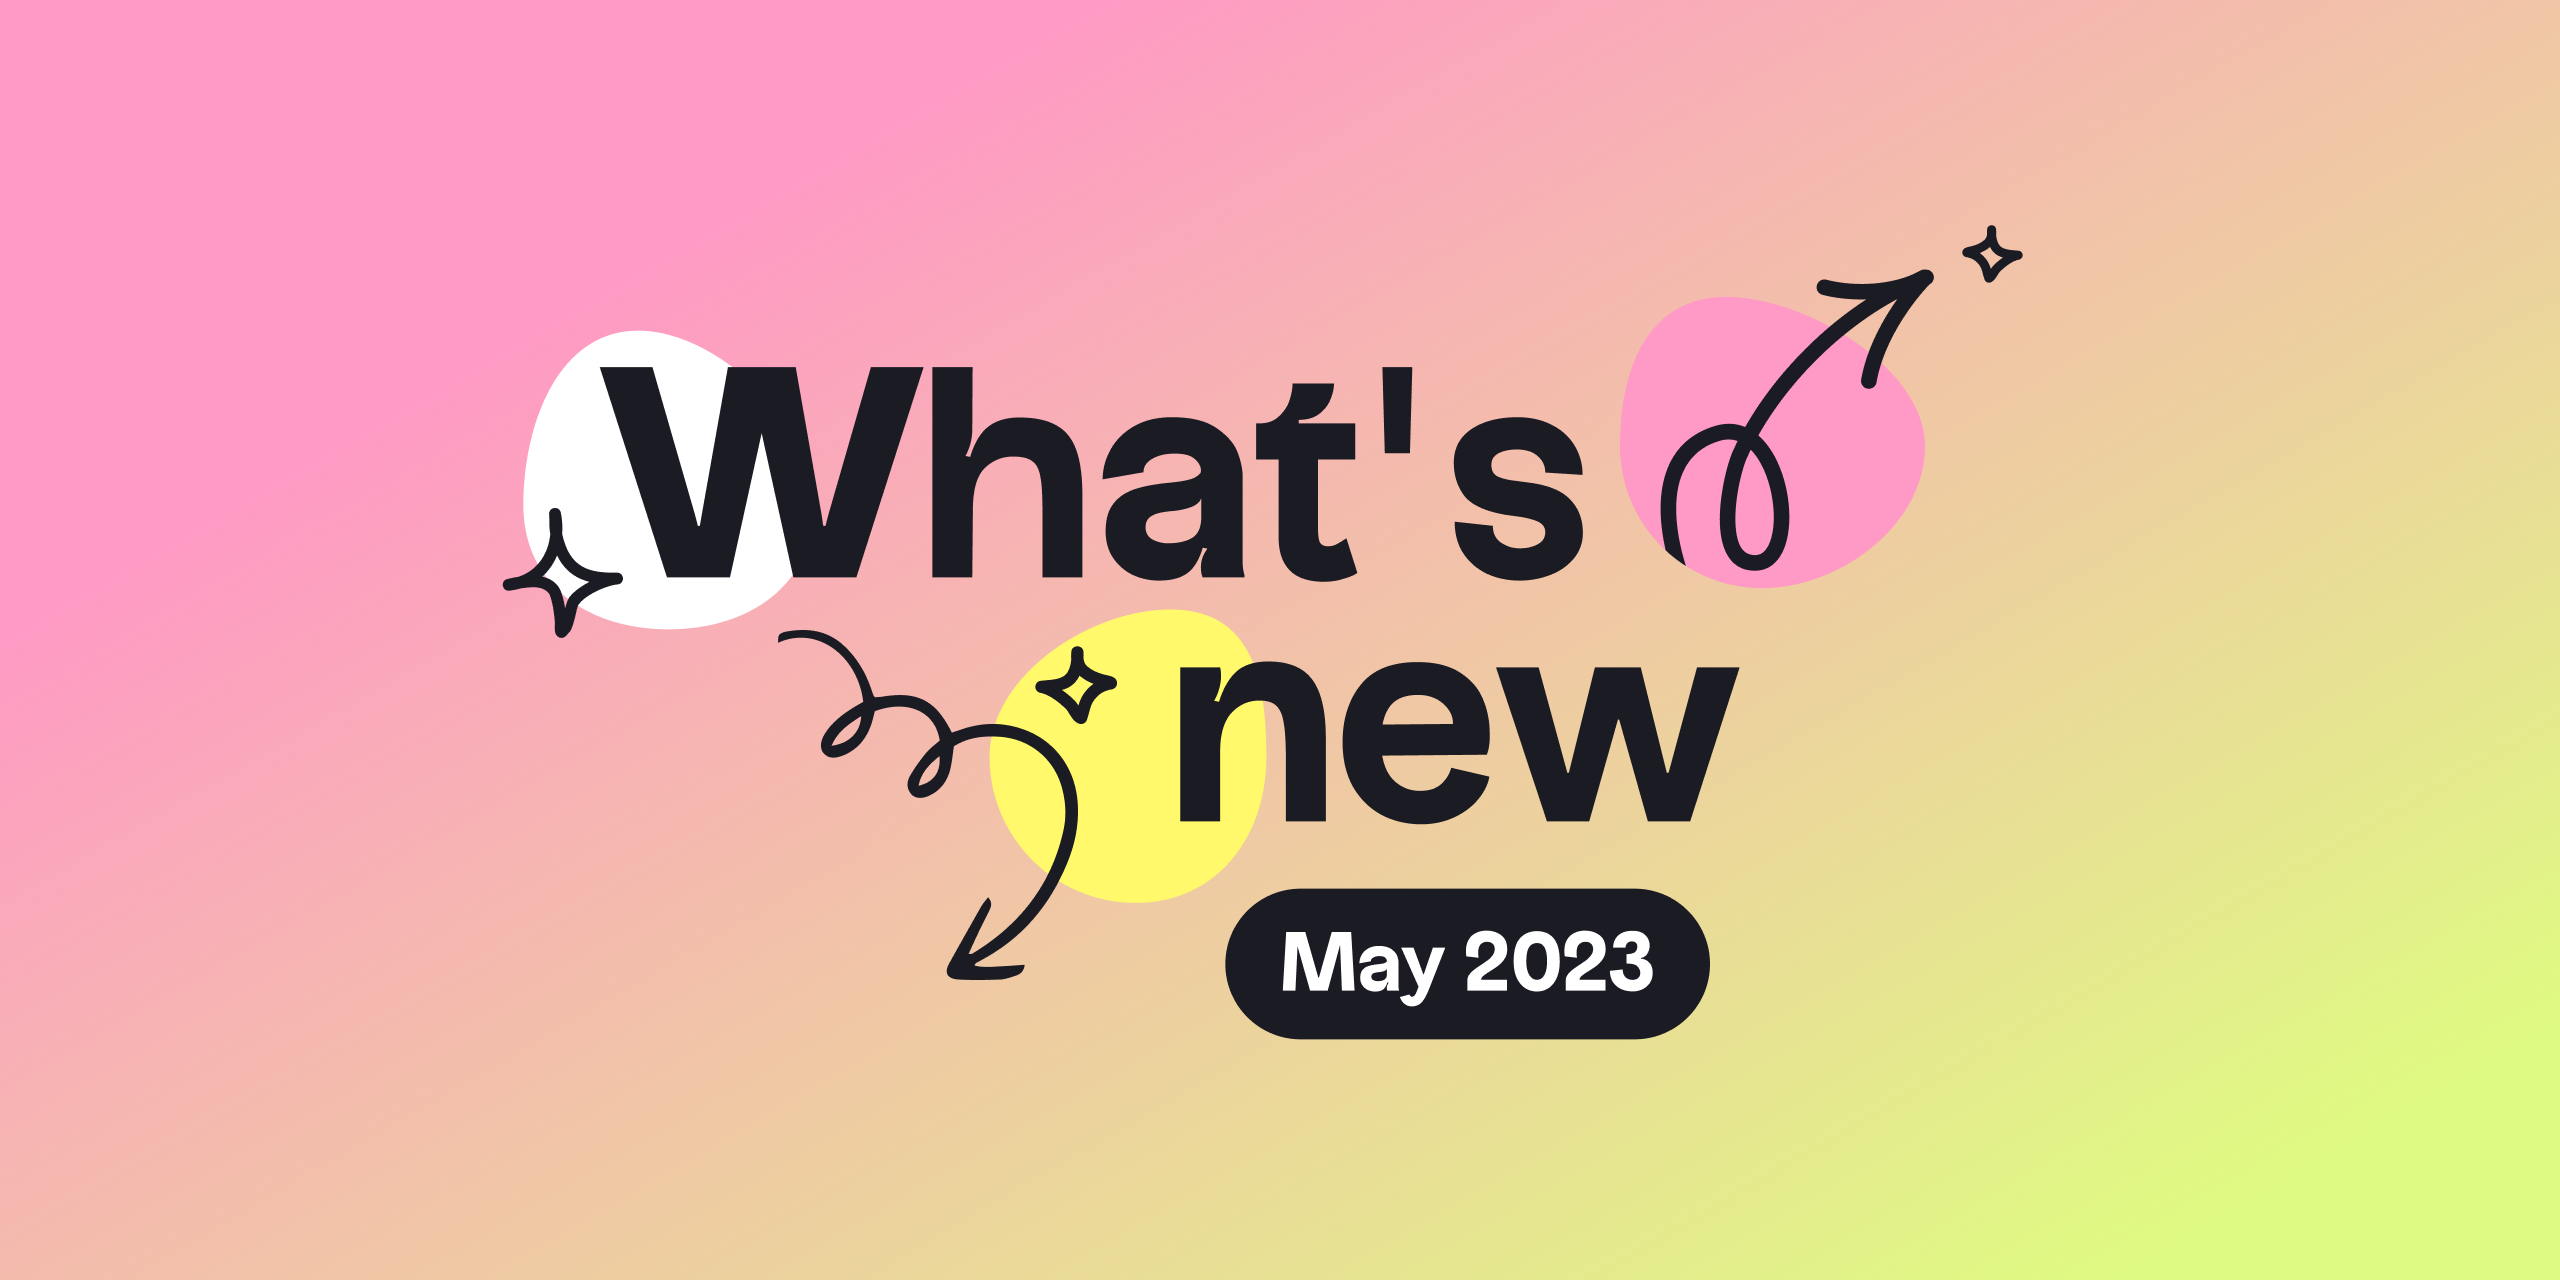 What's new at Klaus May 2023